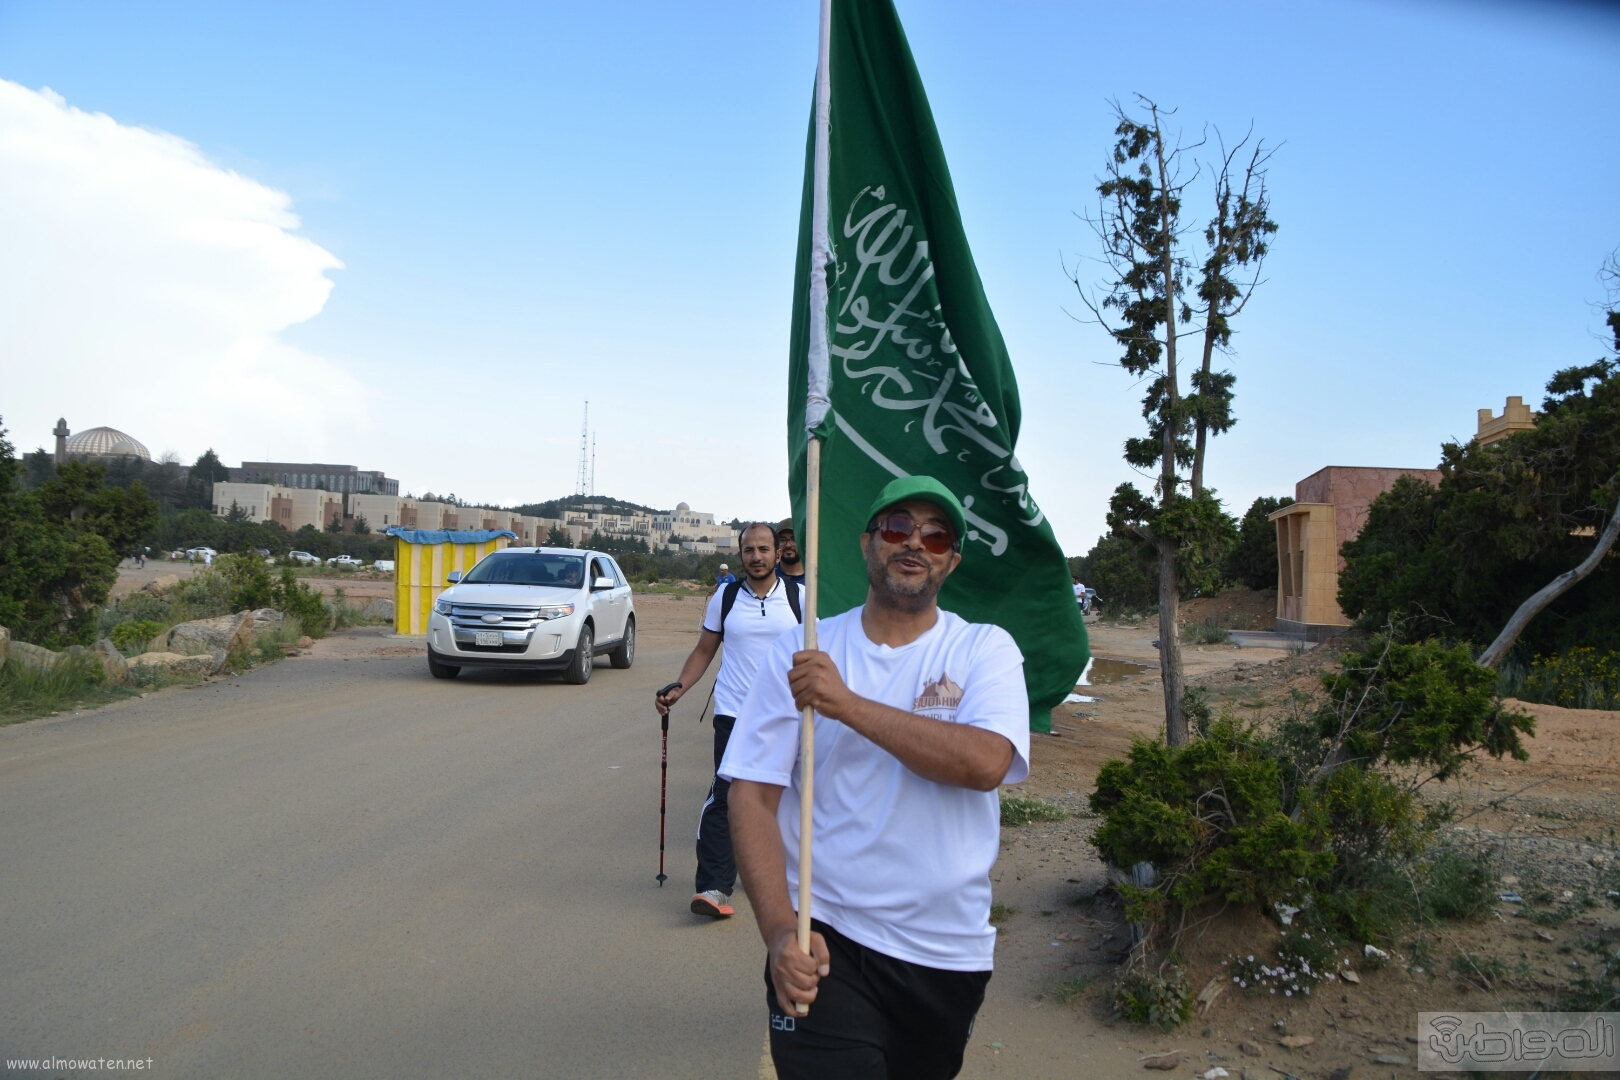 رفع علم السعودية في اعلى قمةعن طريق فريق هايكنج السعودية (1)